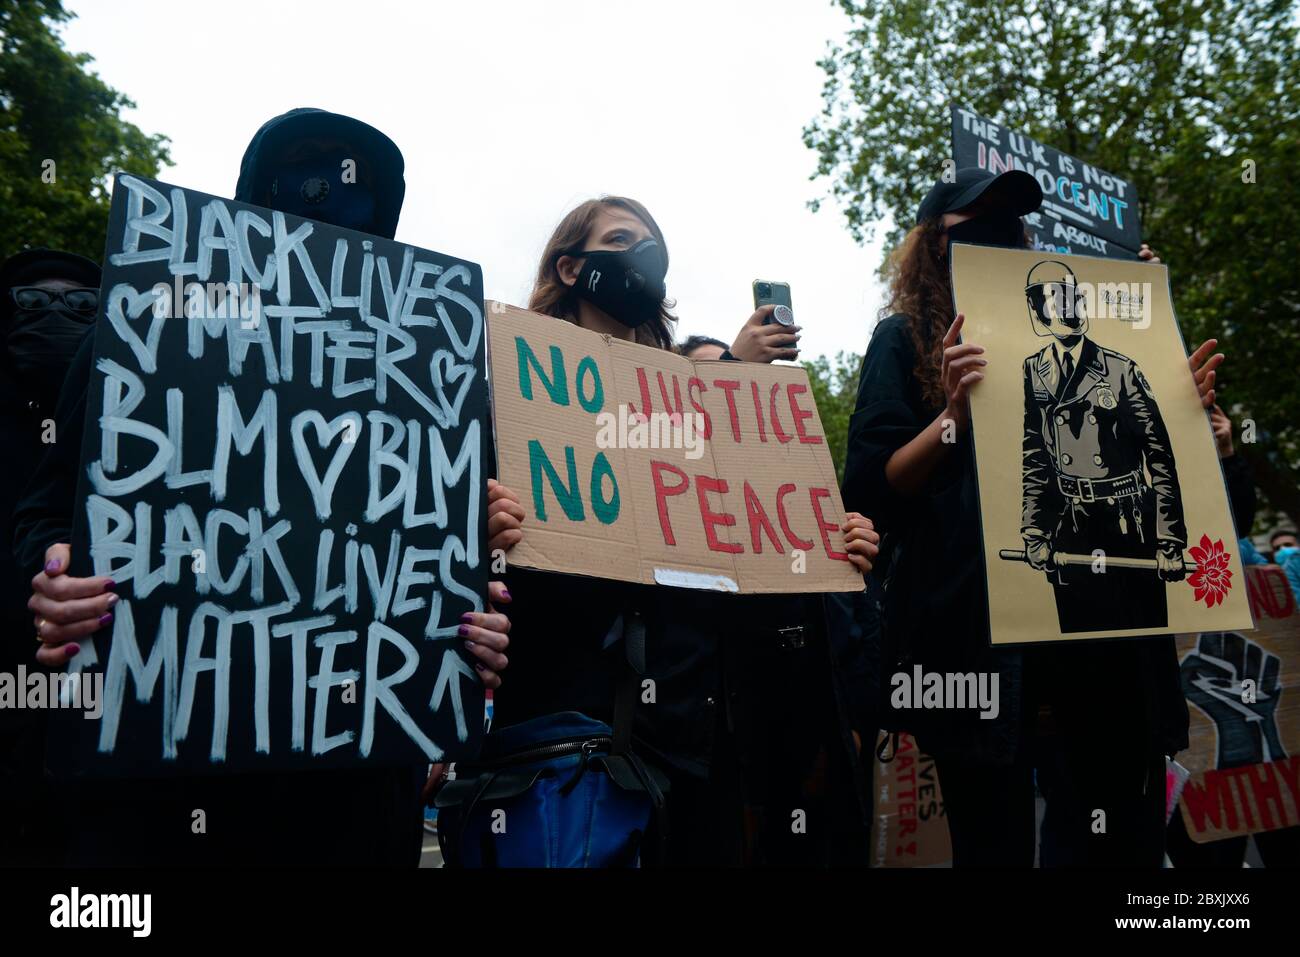 Marchando por vidas negras materia, londres 7 de junio de 2020, foto Antonio Pagano/Alamy Foto de stock